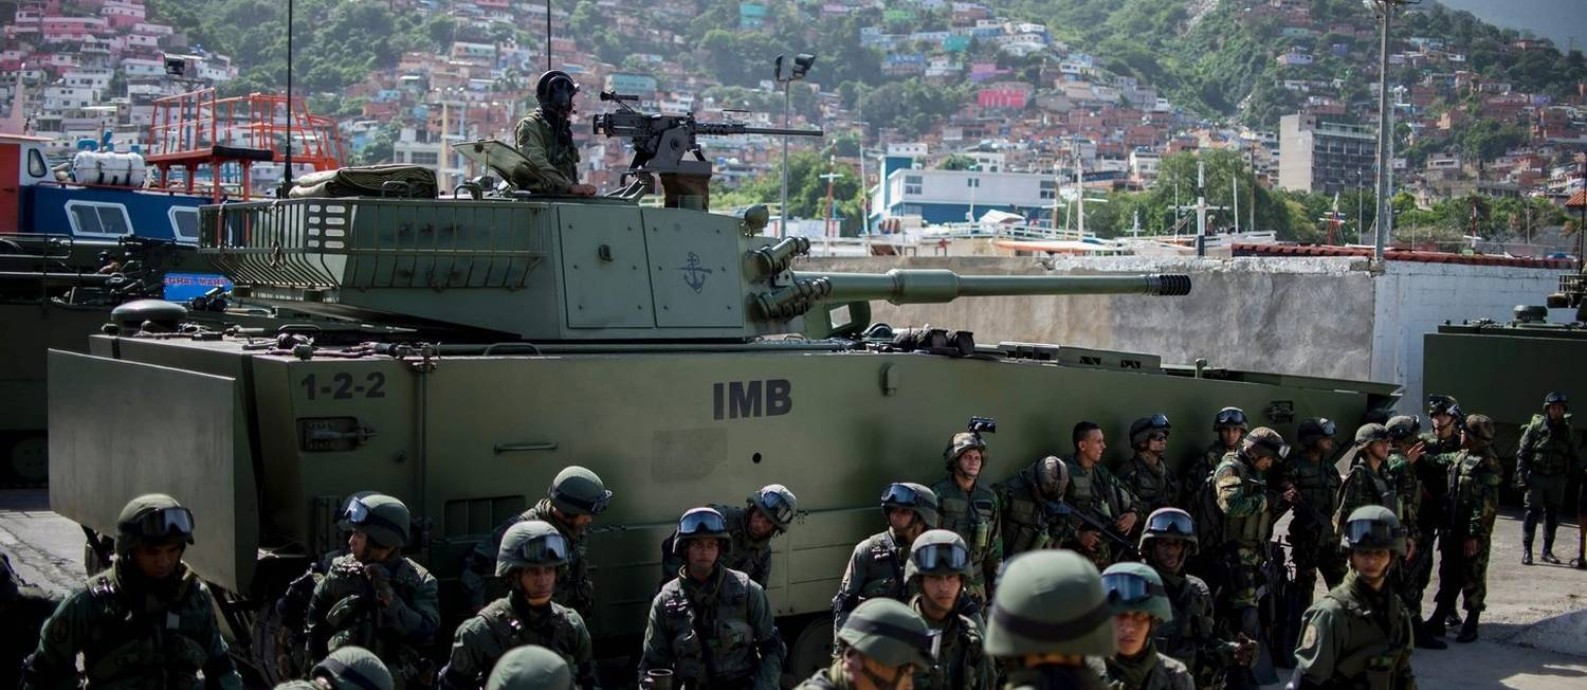 Exercícios militares. Soldados venezuelanos se preparam para embarcar no porto de La Guaira; crise não impediu expansão de gastos com Defesa
Foto: FEDERICO PARRA / AFP/8-1-2017